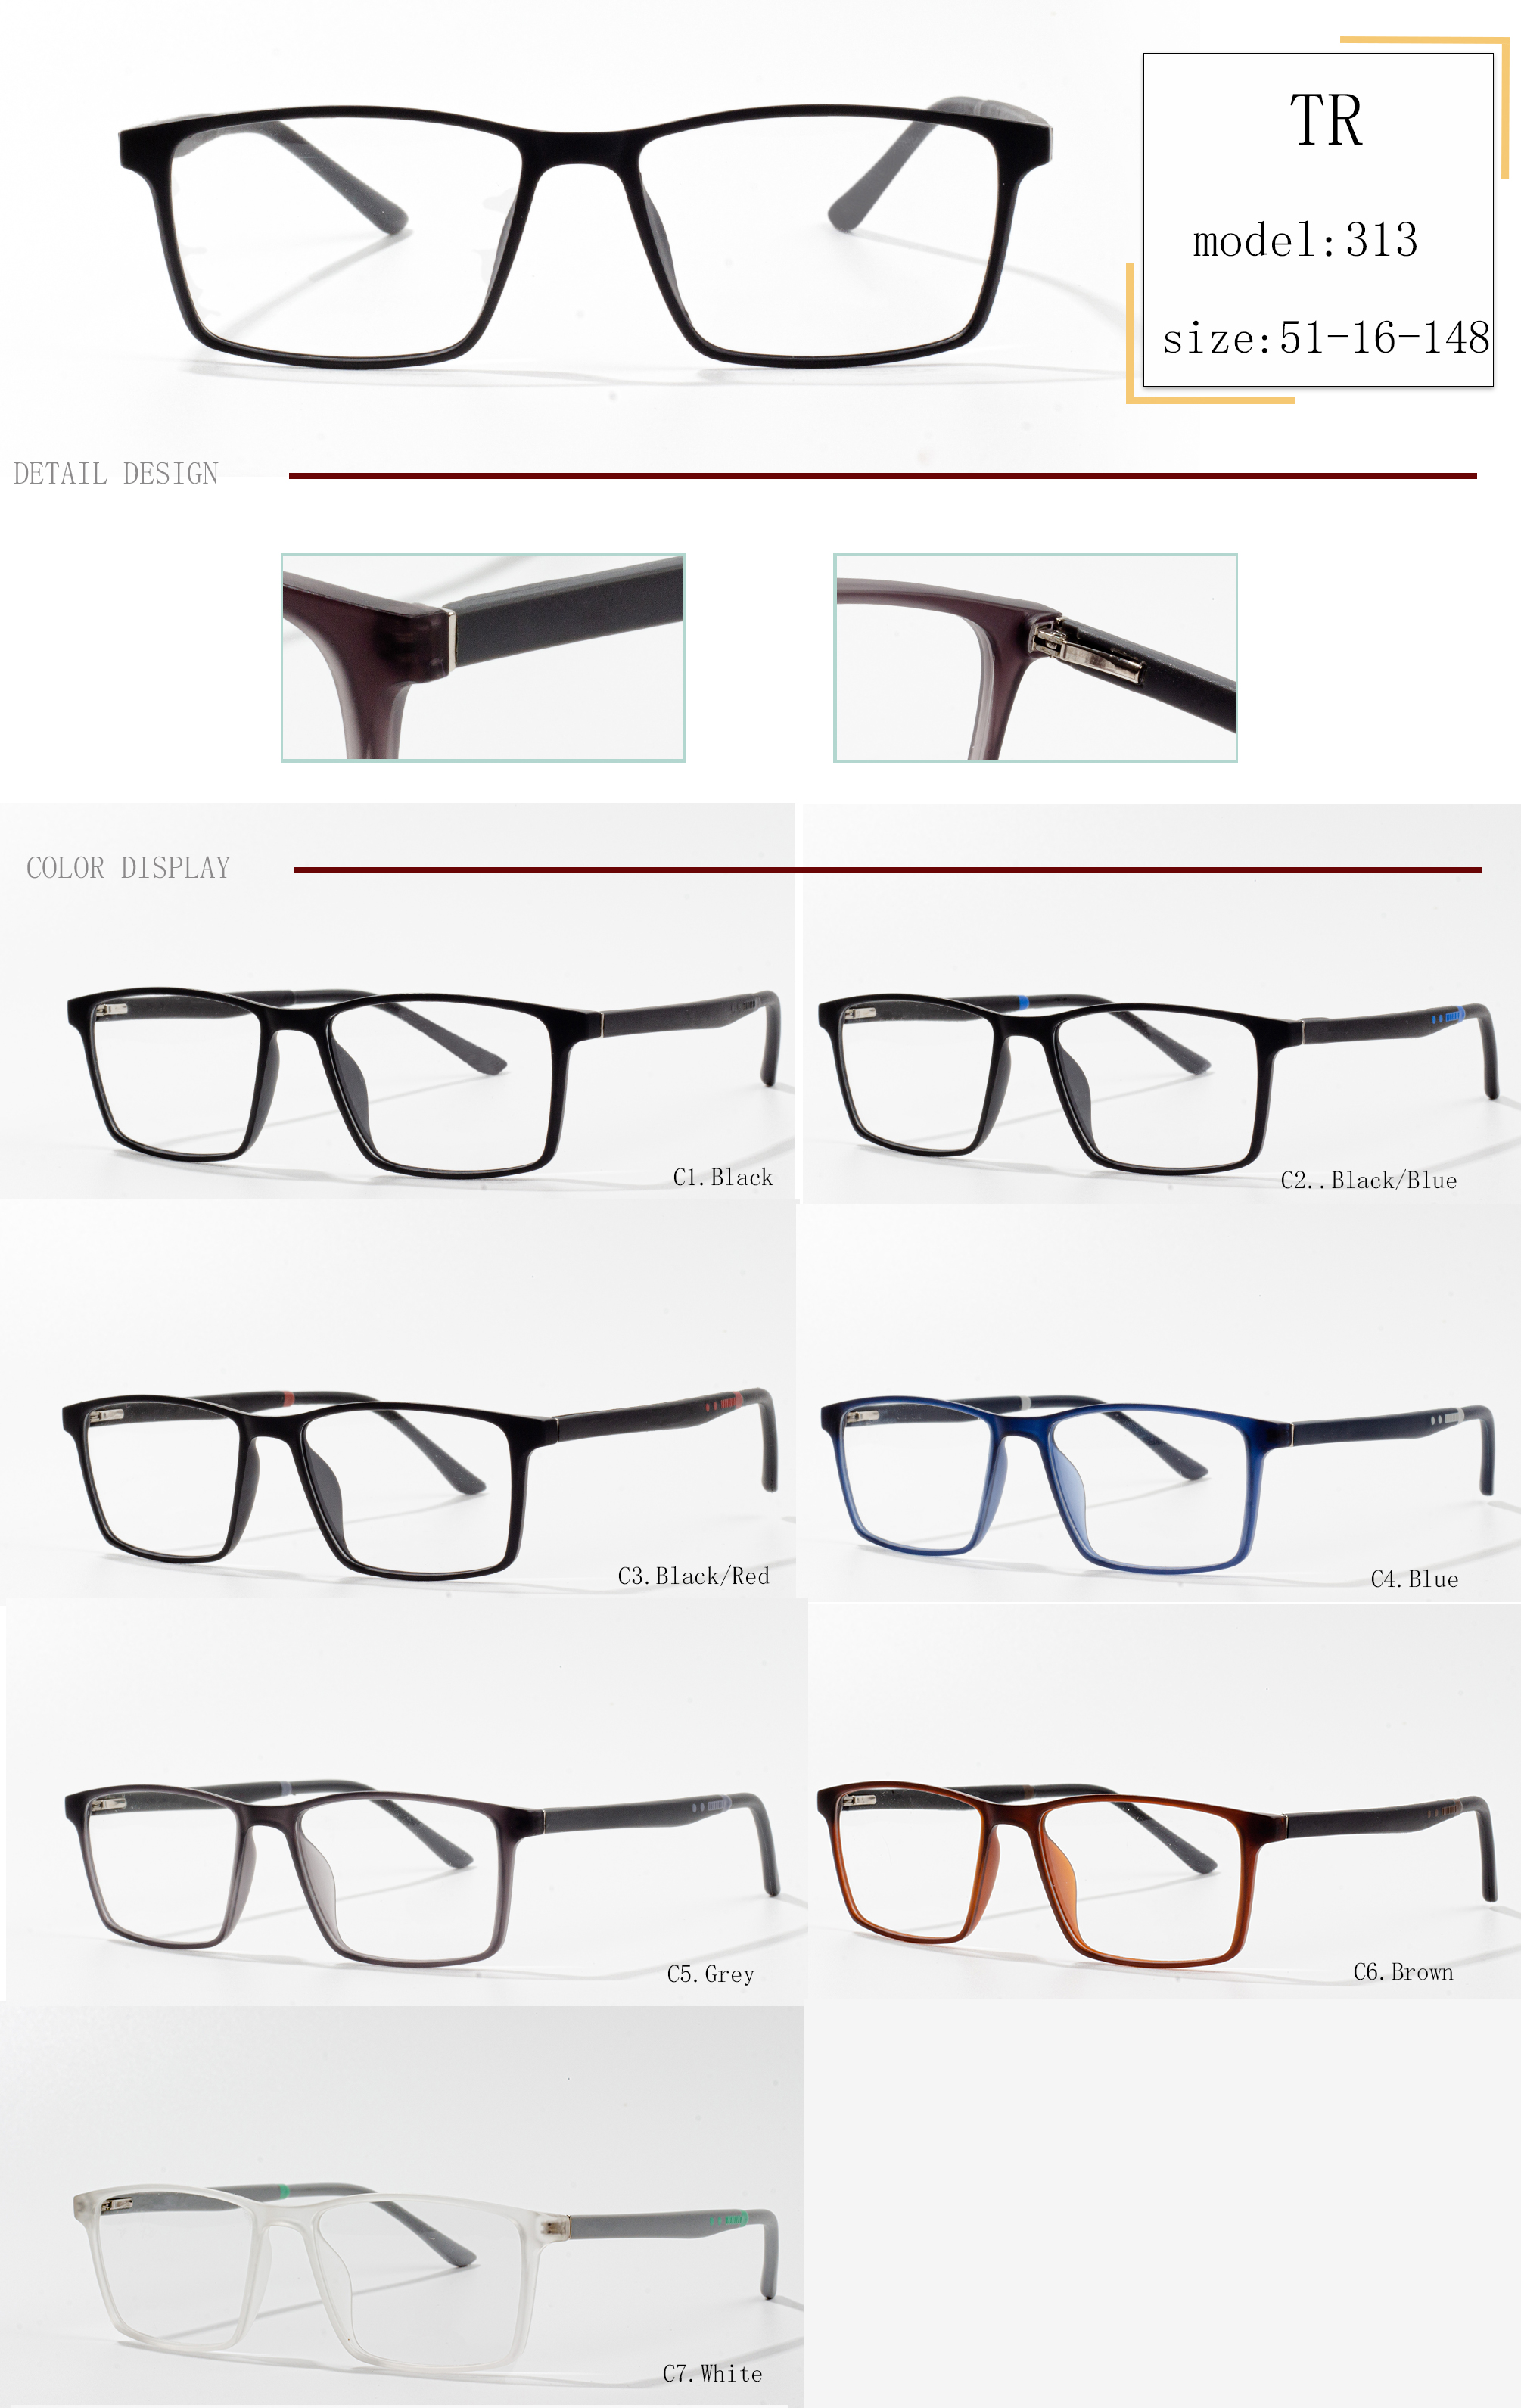 فروش عمده عینک tr sport